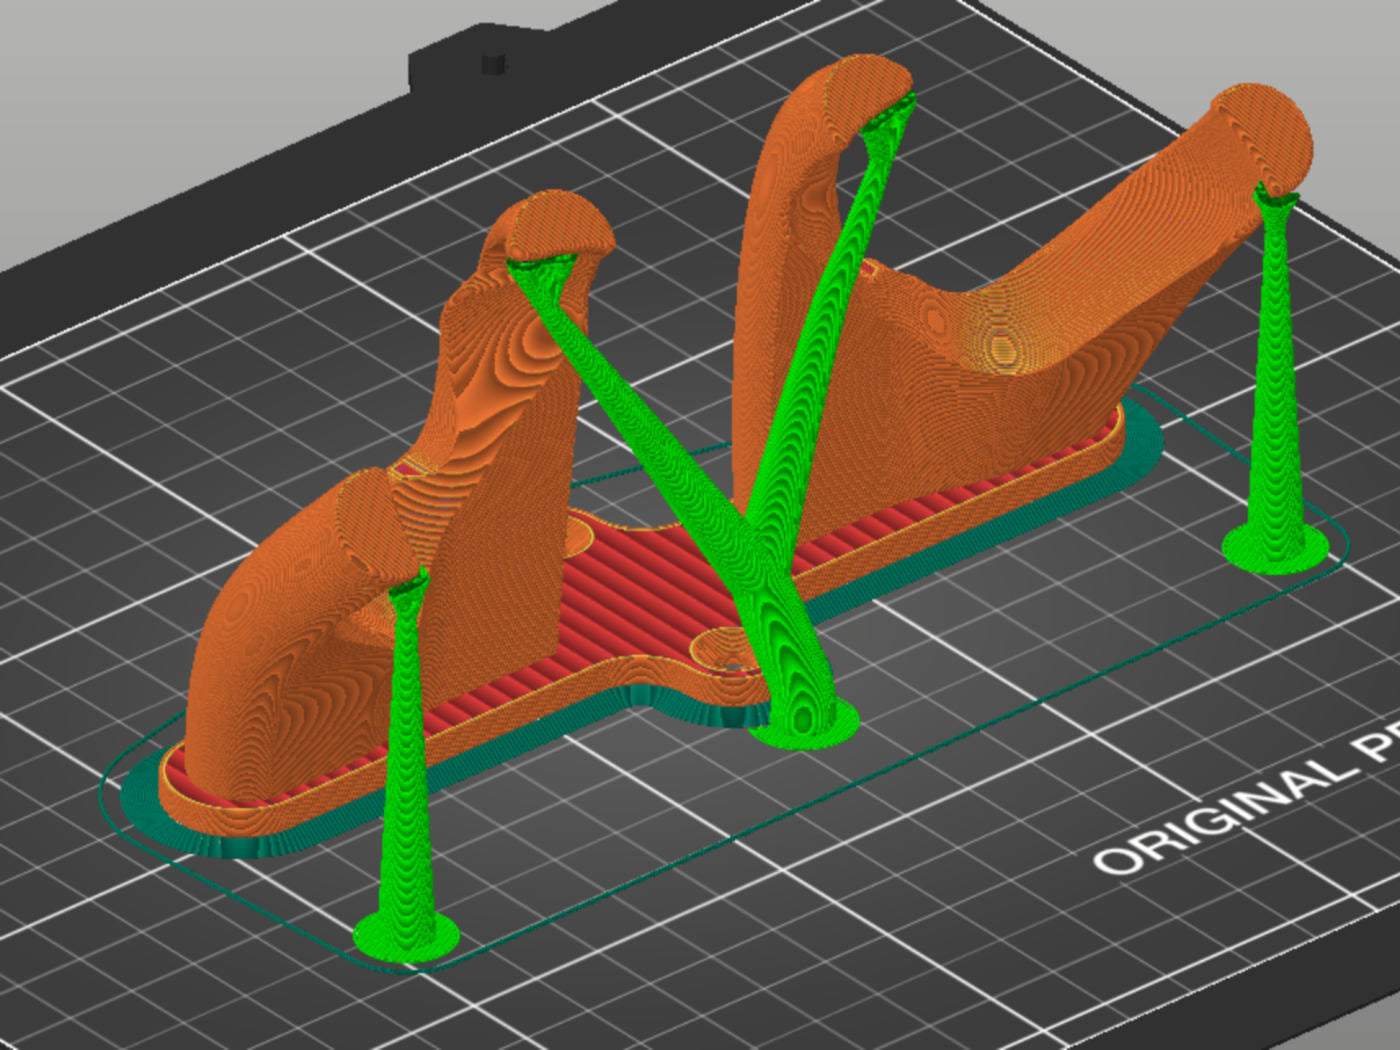 GAMER HEADSET HOOK HOLDER free 3D model 3D printable